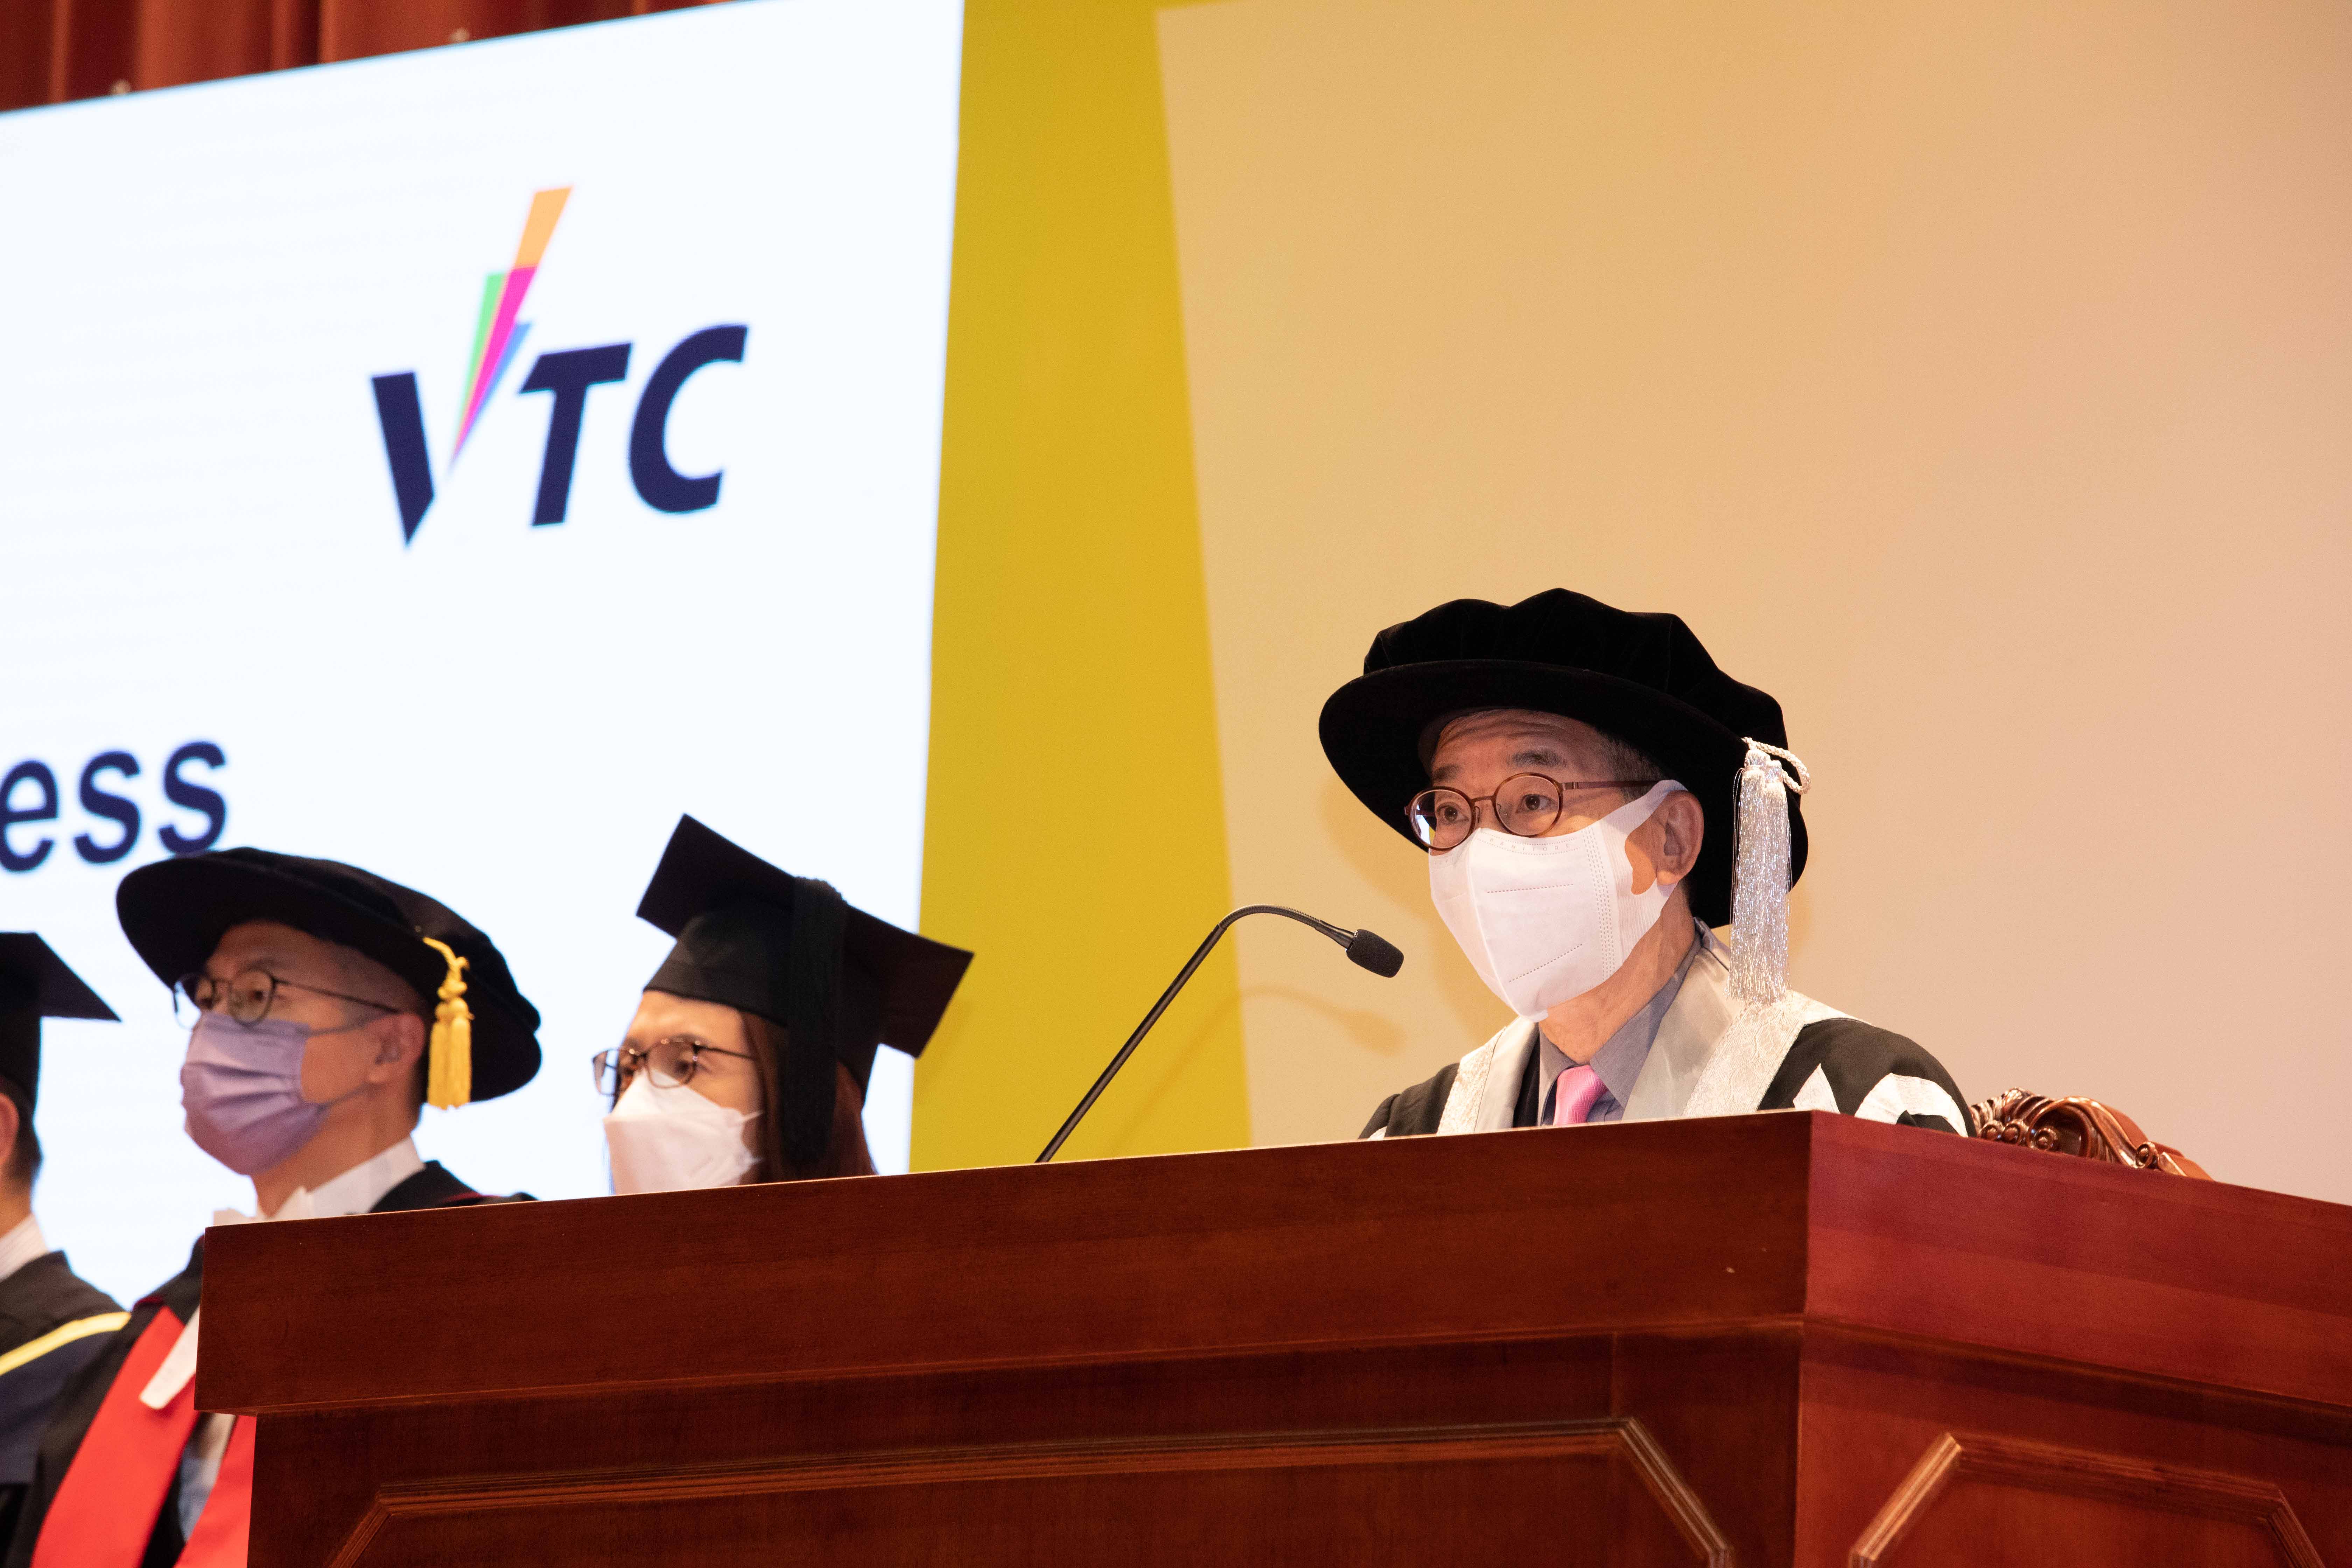 VTC院校舉行畢業典禮 逾1.7萬名畢業生獲頒授各級資歷